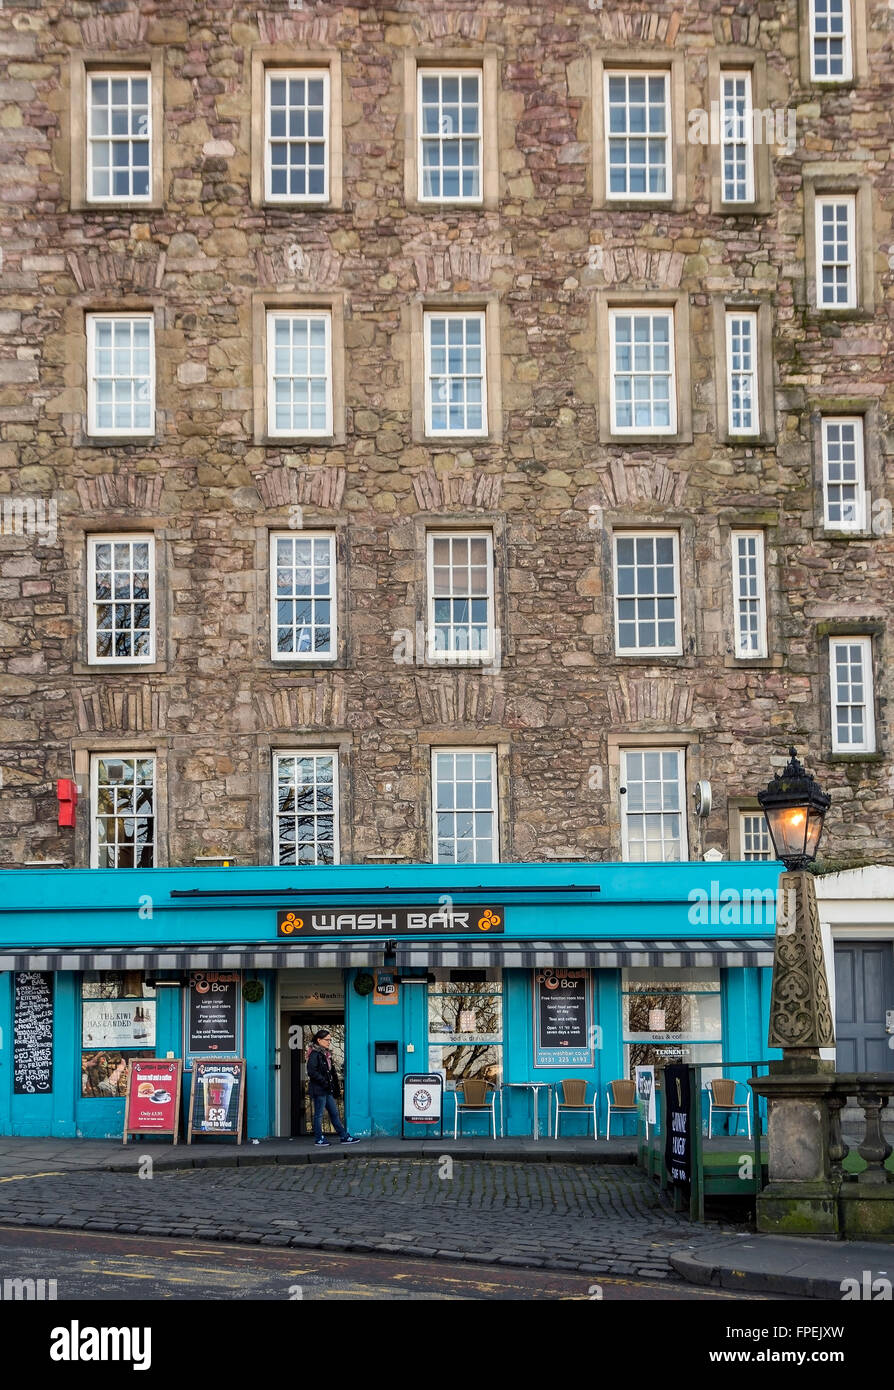 Debajo de estos Old Town Apartments es uno de los muchos pubs de Edimburgo - Wash bar está en el montículo, con vistas a la calle Princes Street. Foto de stock